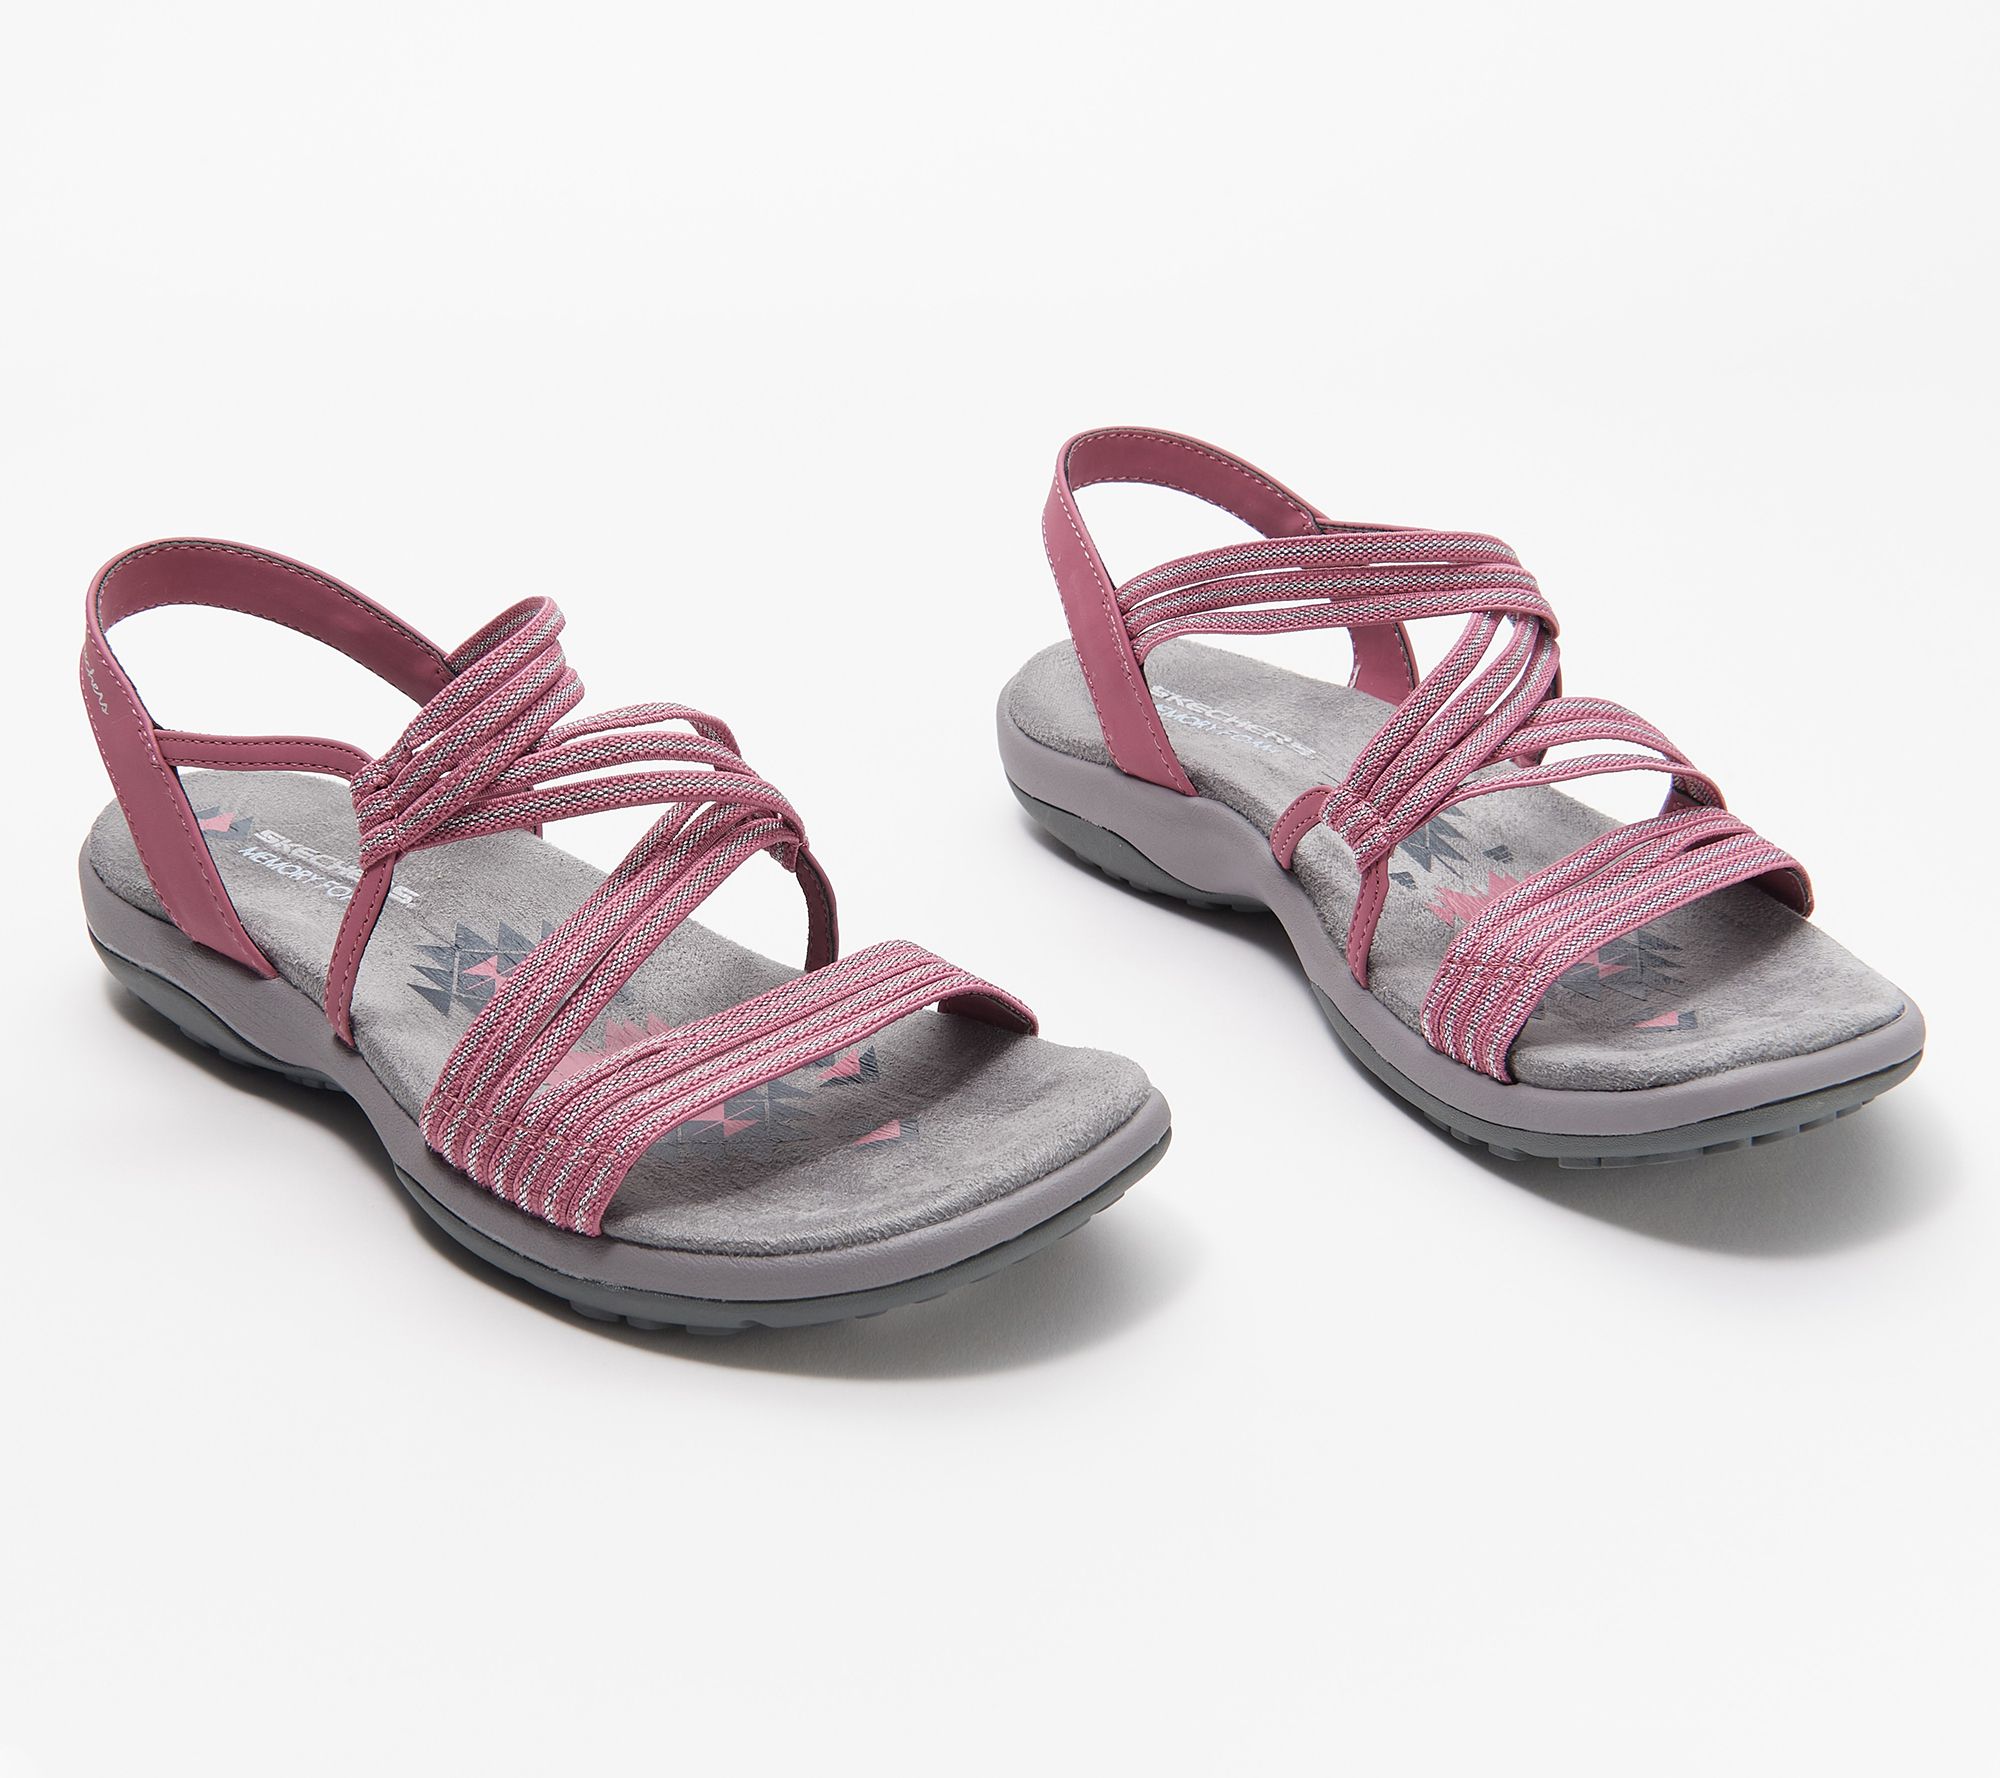 Skechers Slim Stretch Sandals - Stretch - QVC.com